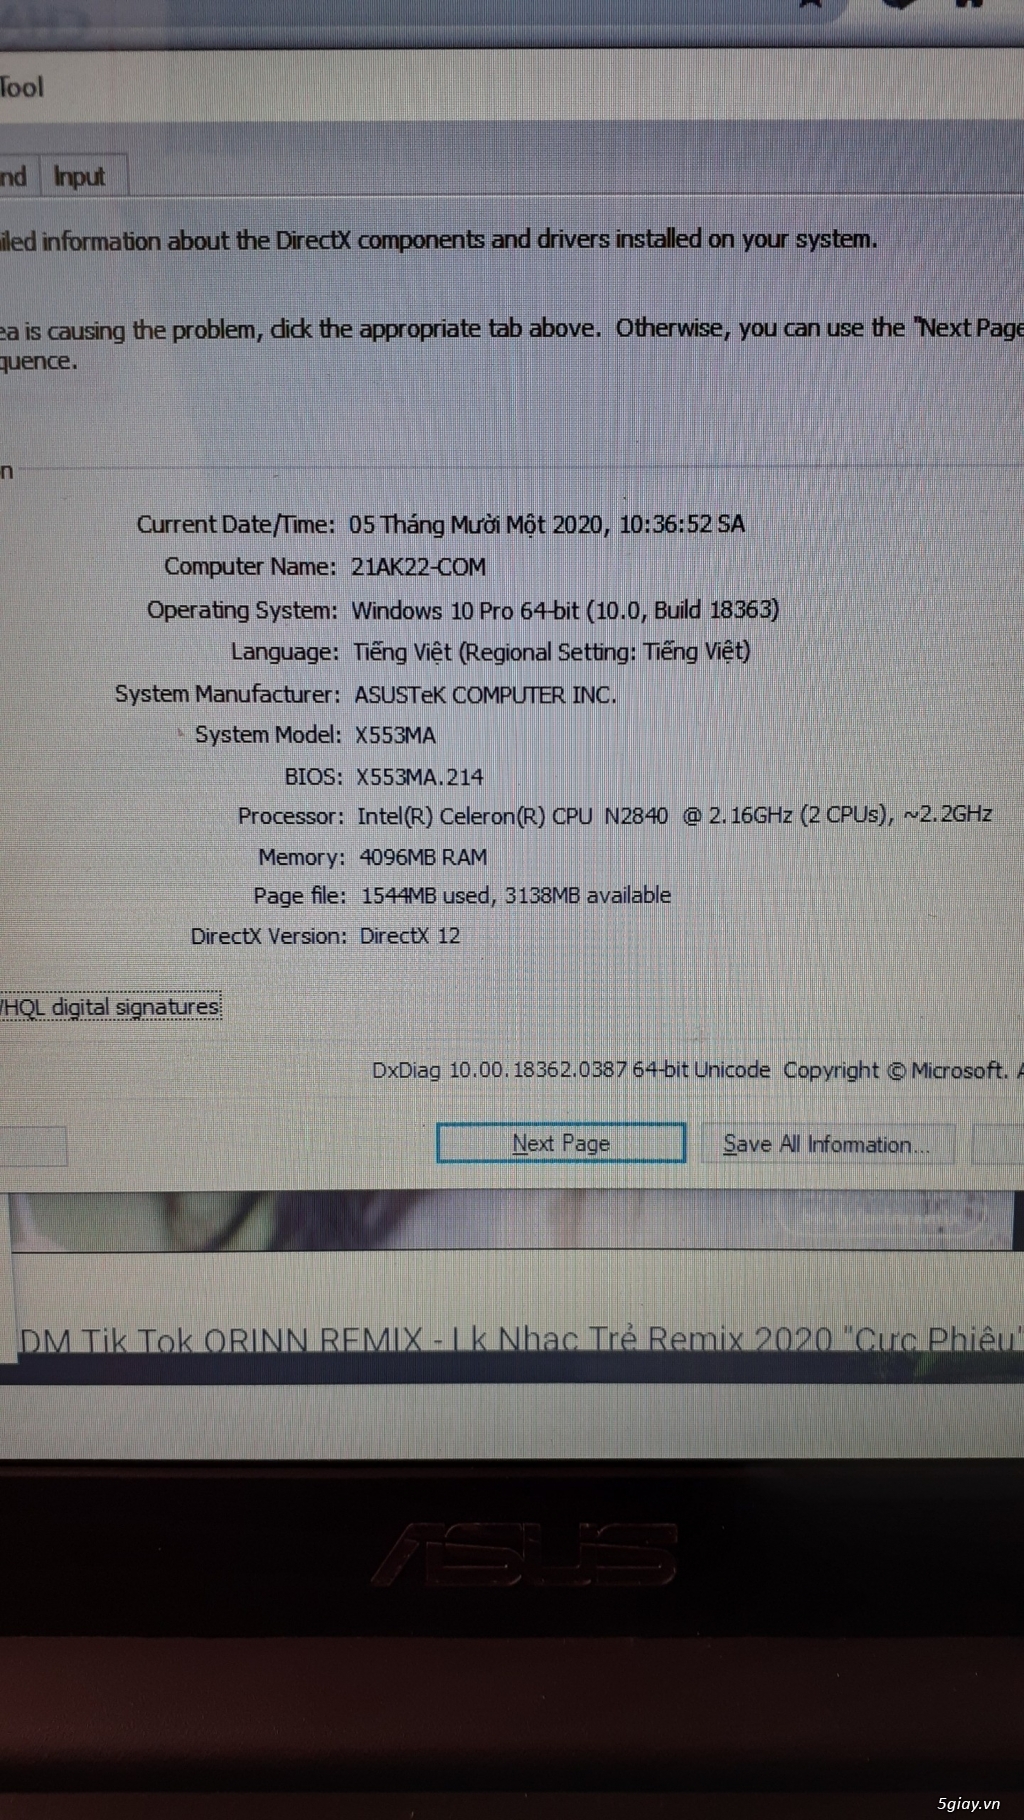 Bán X553MA cũ chính hãng giá rẻ Ram 4GB,có SSD 120GB - 2